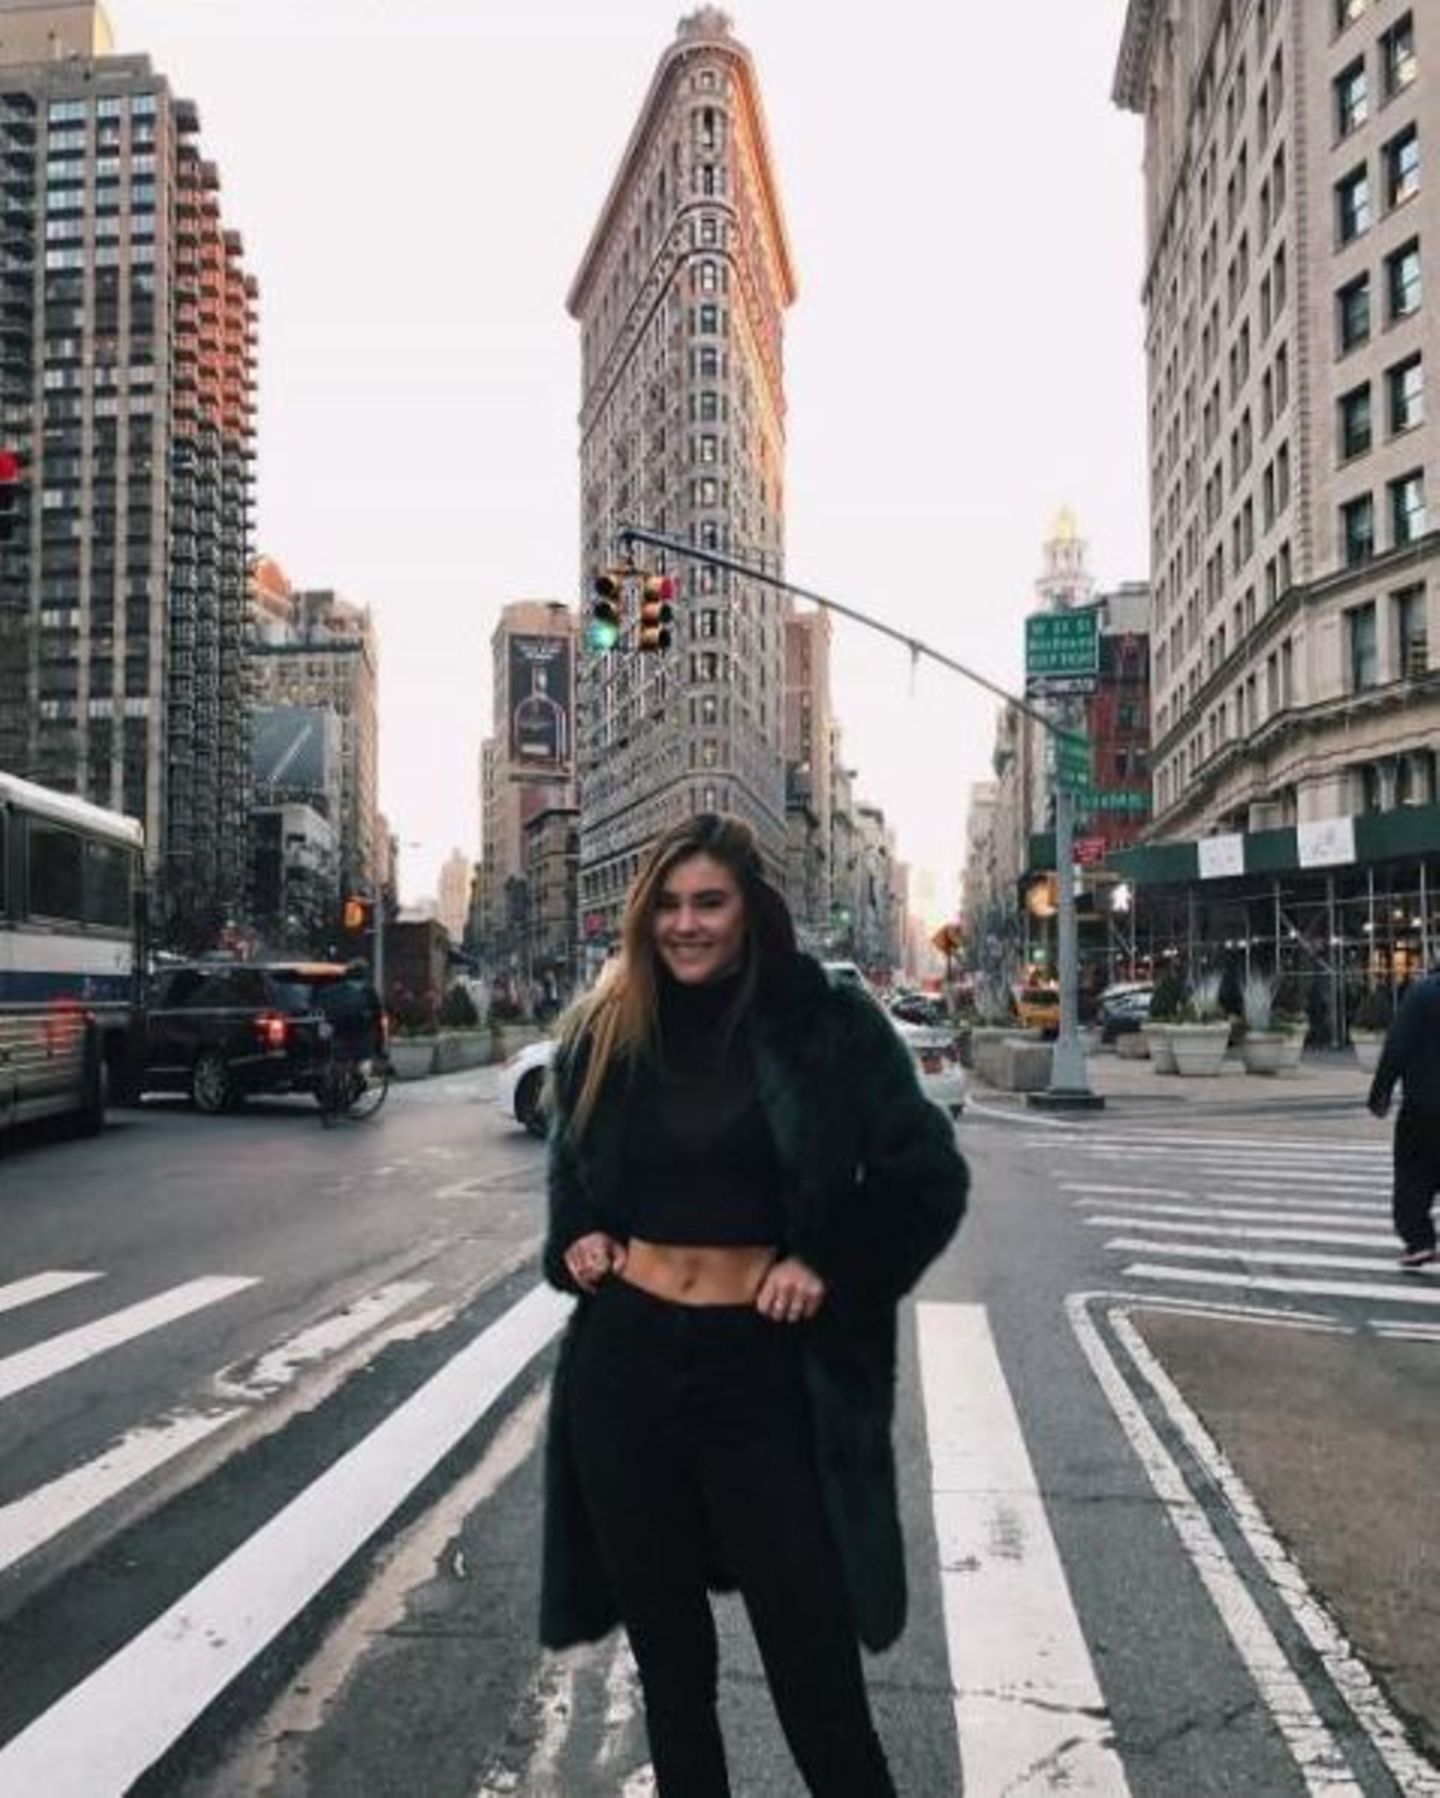 Glückliches Mädchen in New York - postet Stefanie Giesinger. Also wenn Mama das sieht, gibt es bestimmt Ärger wegen dem Bauchfrei-Outfit in der winterlichen Großstadt.